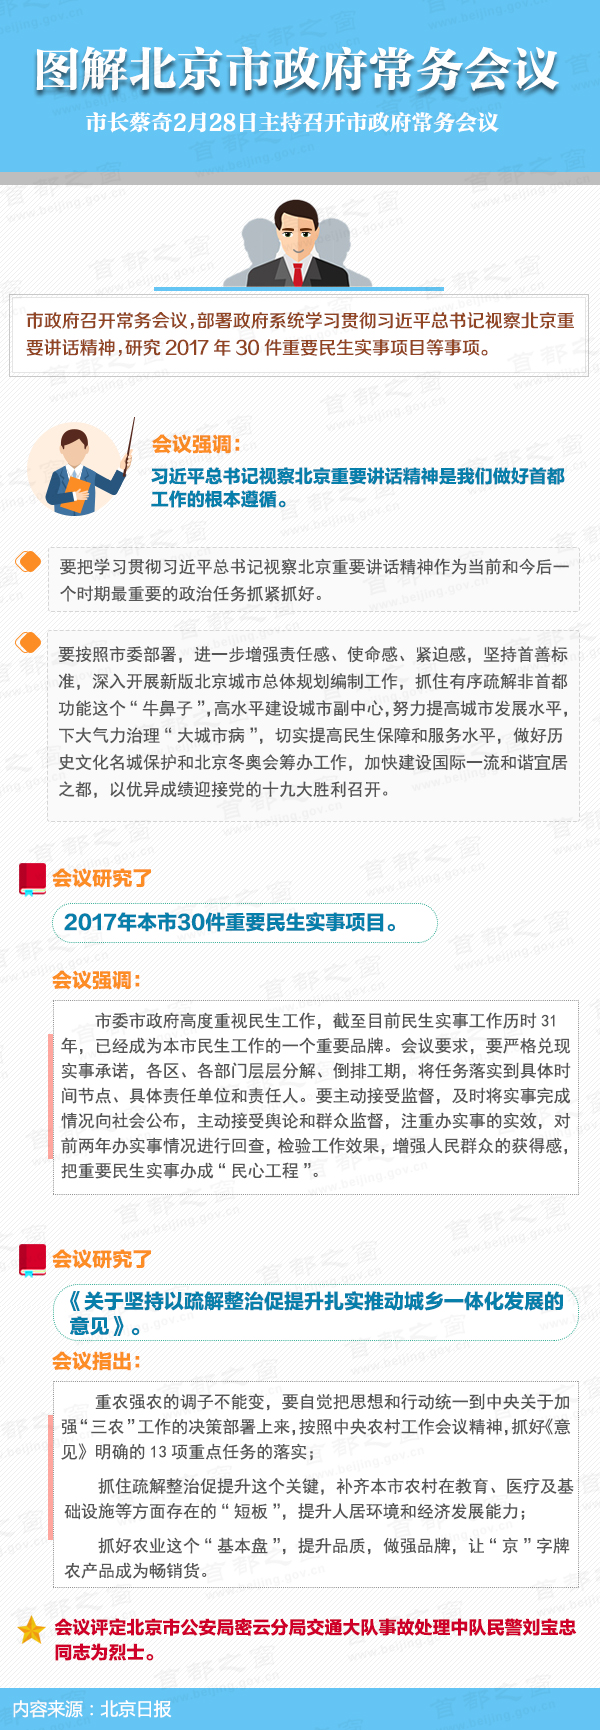 圖解2017年2月28日北京市政府常務會議